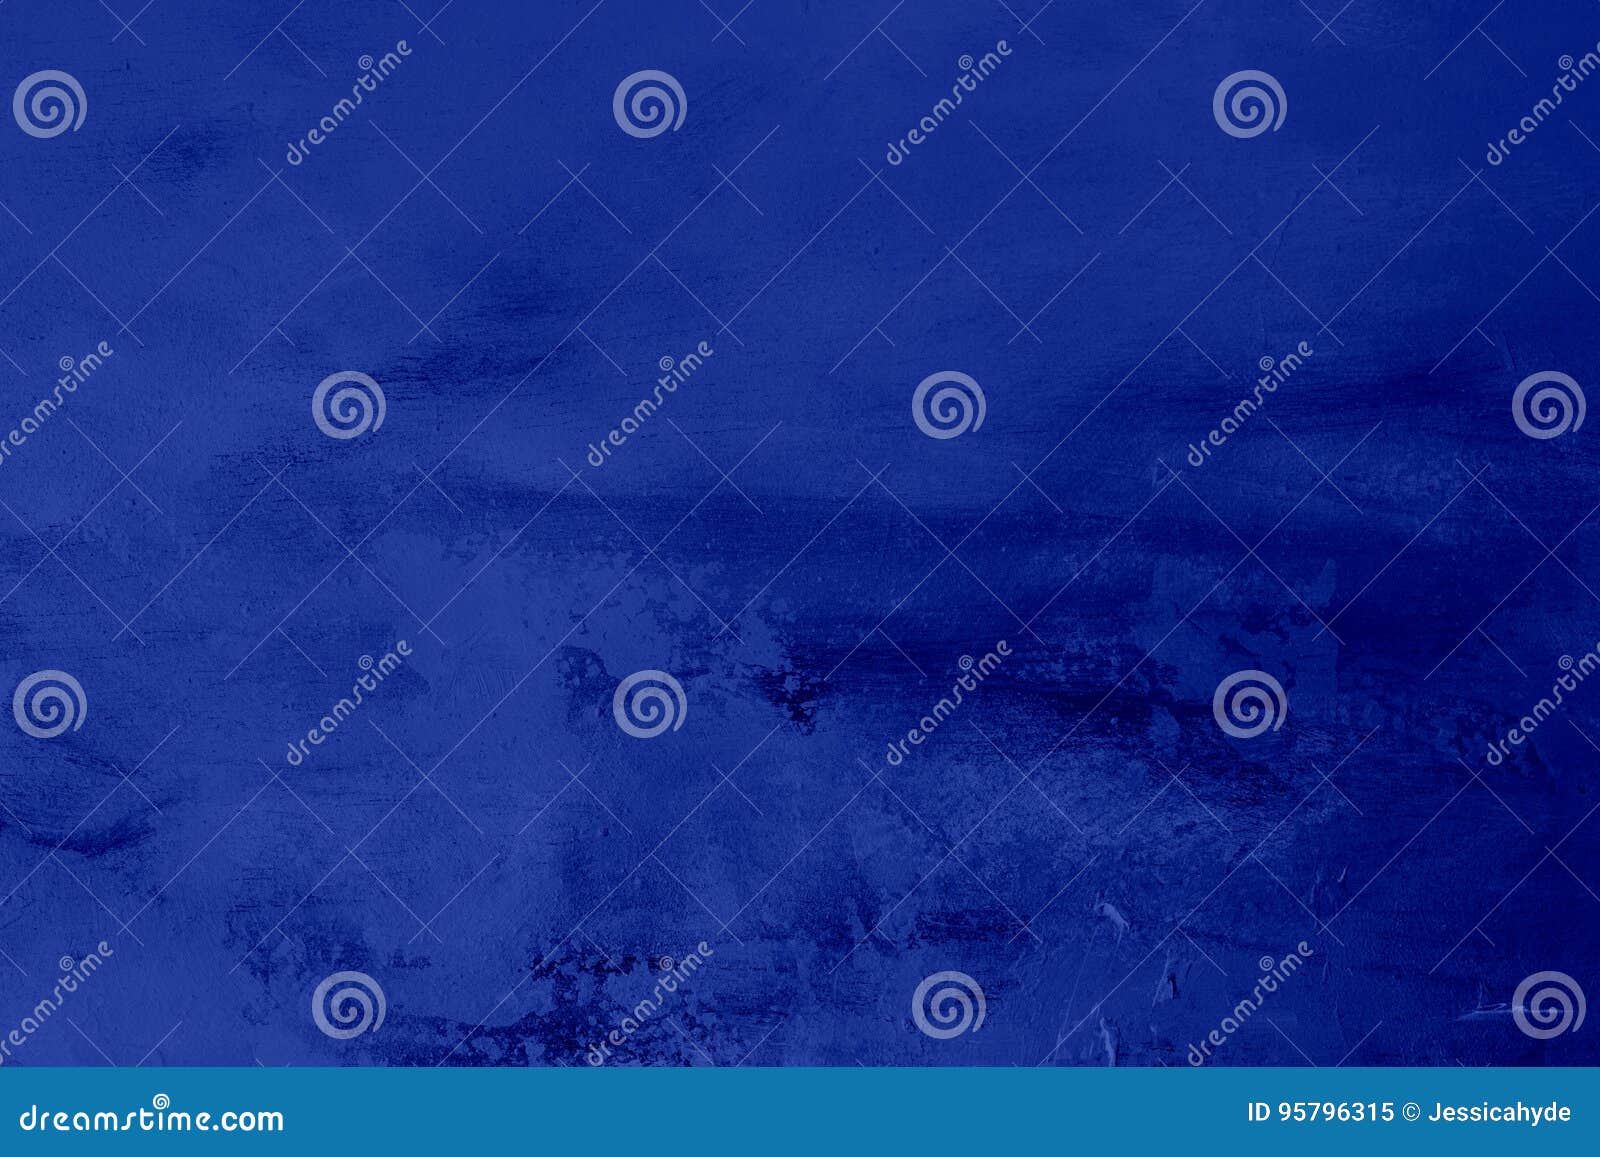 blue indigo grungy background